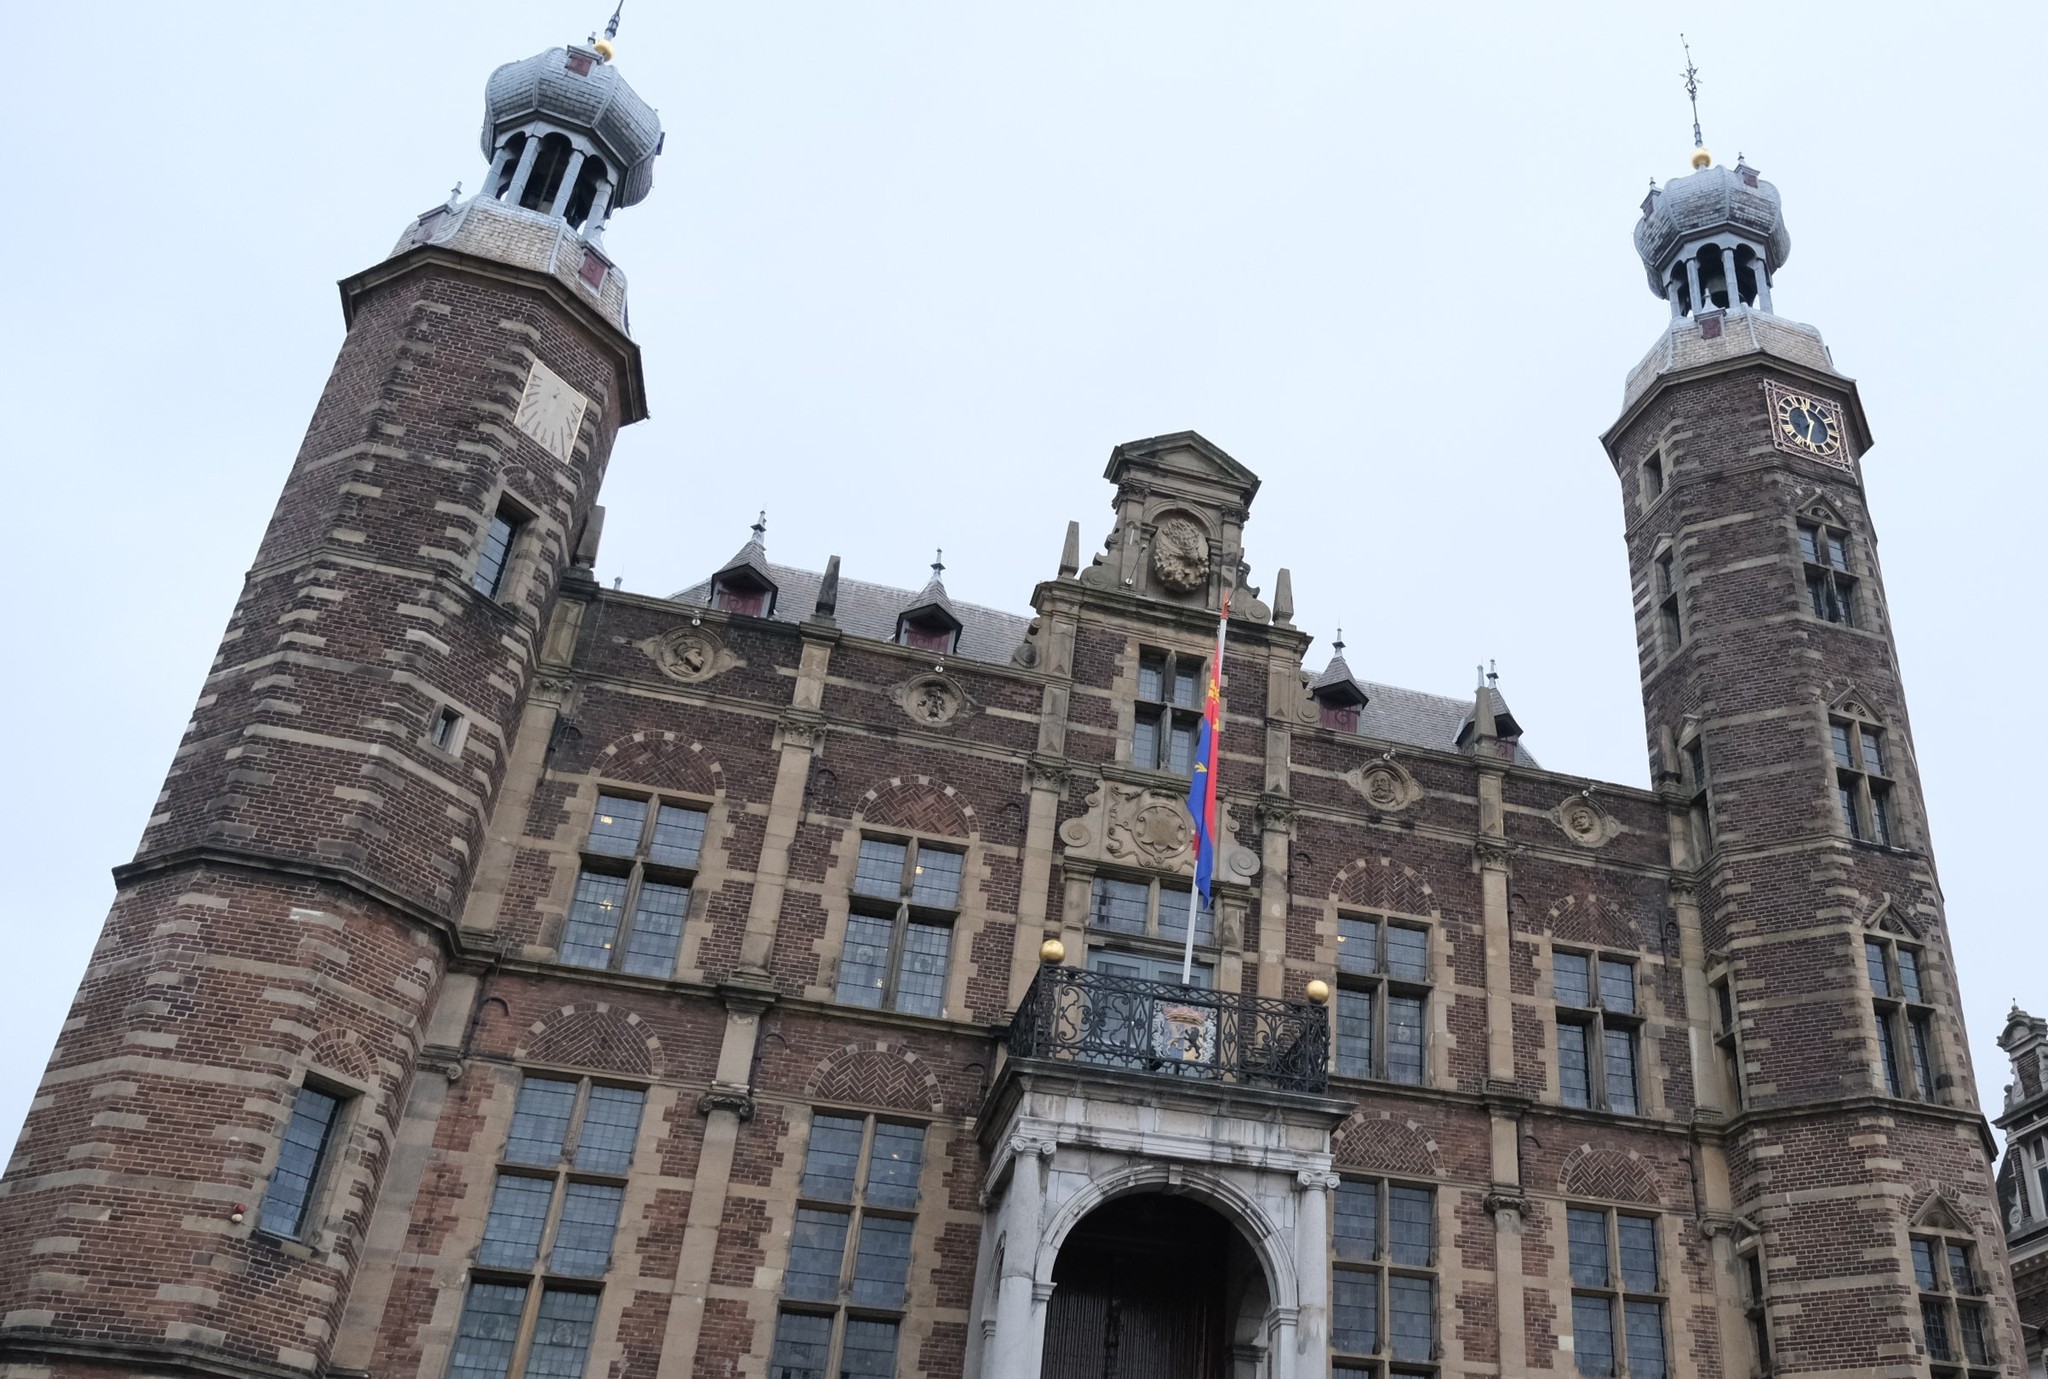 "School in Stadhuis"